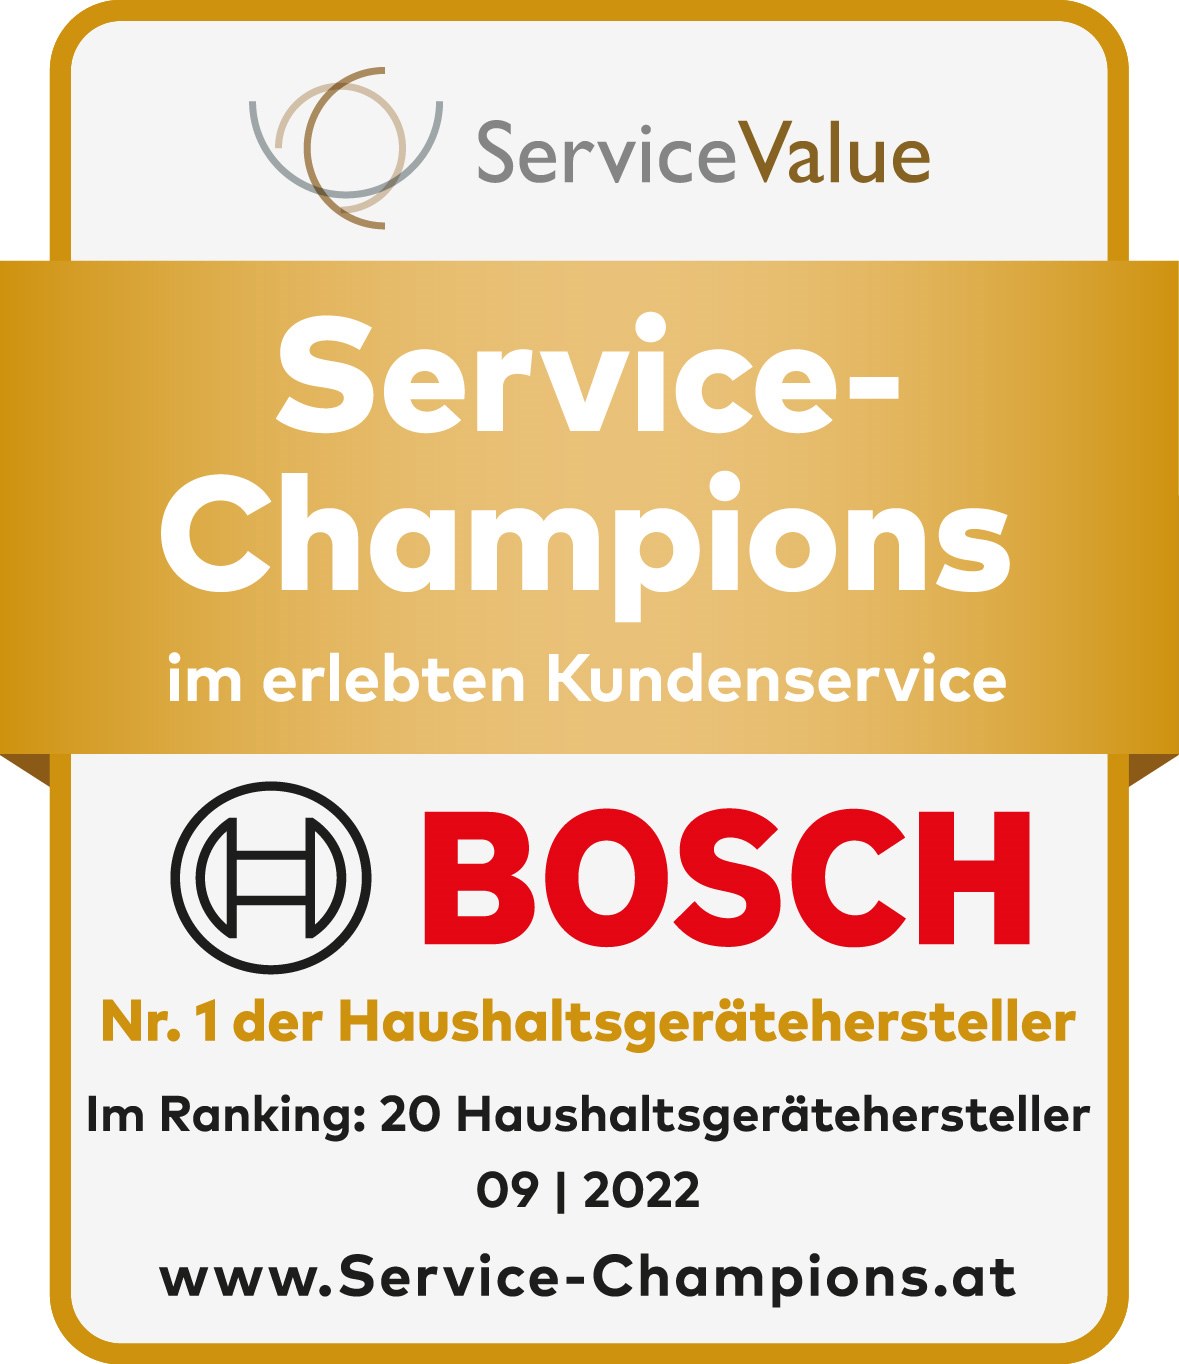 Bosch Hausgeräte ist Service Champion 2022 mit bestem Kundenservice in Österreich